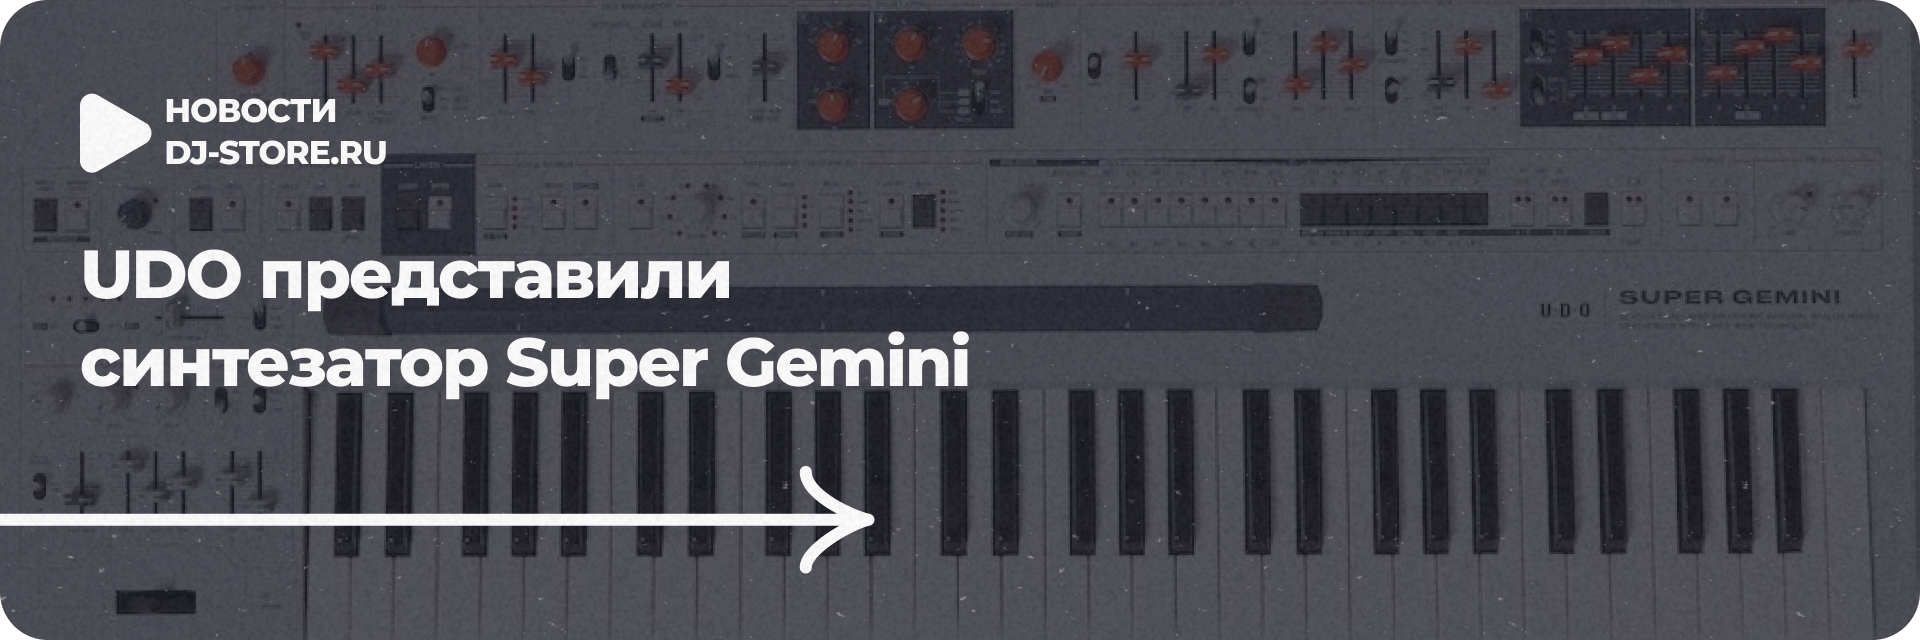 UDO представили синтезатор Super Gemini